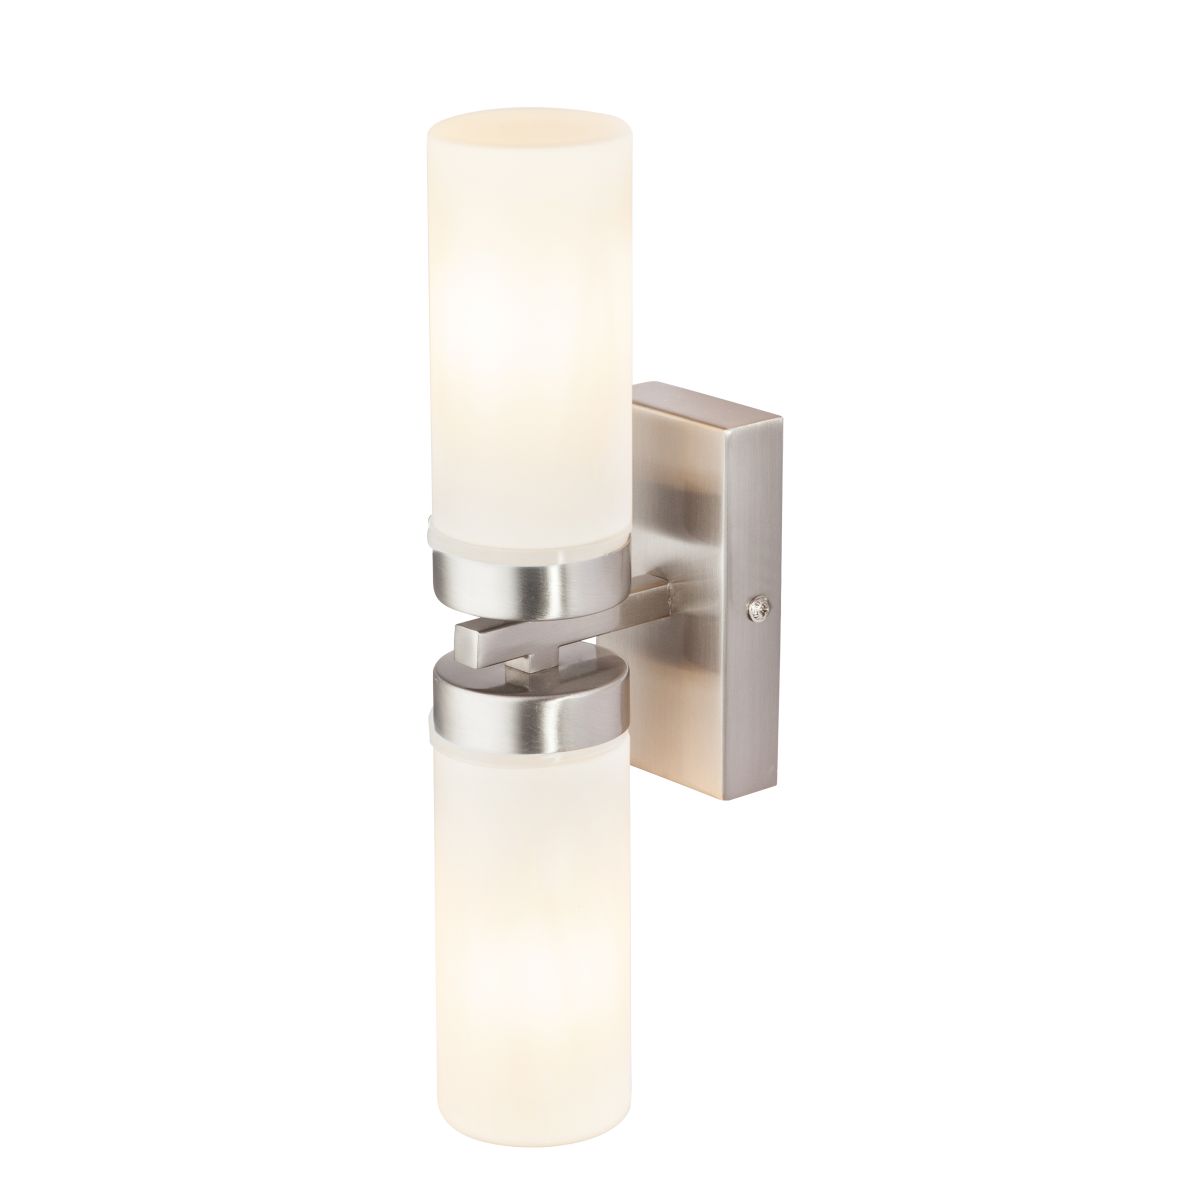 Светильник для ванной комнаты Globo 7816, матовый никель, E14, 2x40W 7816